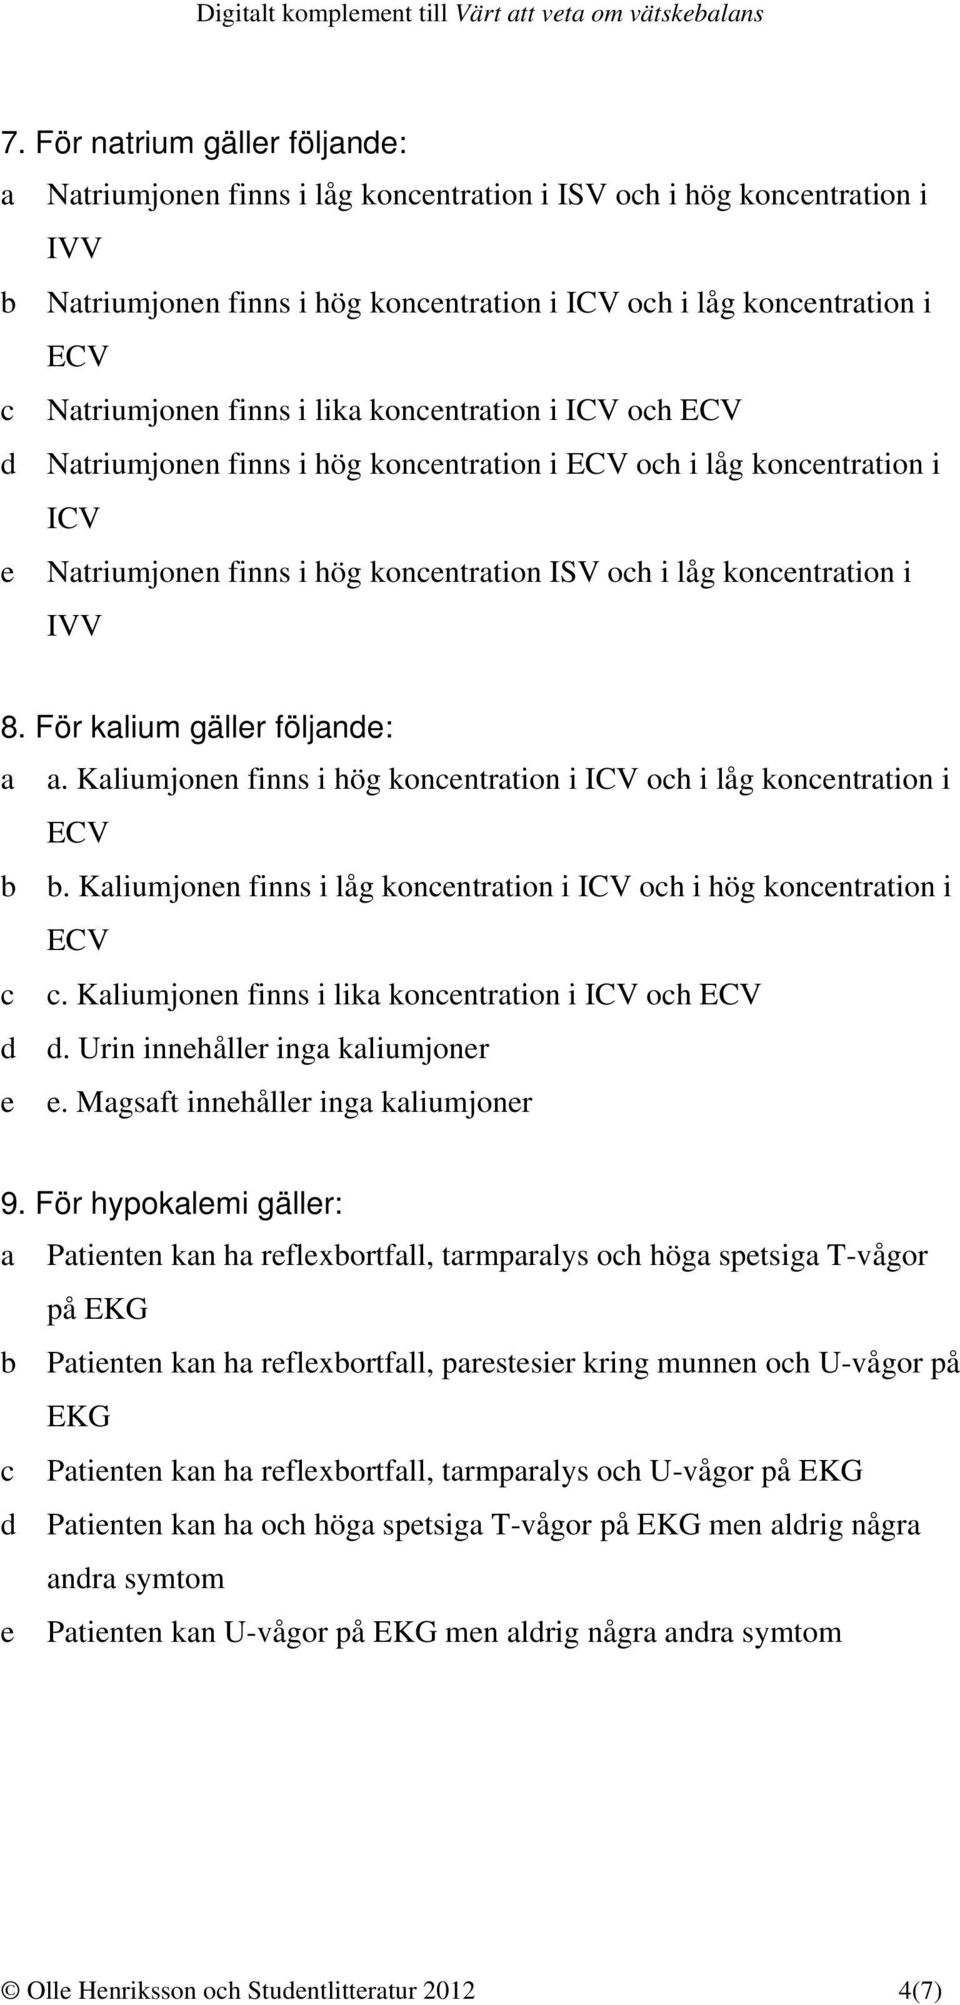 i IVV 8. För kalium gäller följande: a a. Kaliumjonen finns i hög koncentration i ICV och i låg koncentration i ECV b b. Kaliumjonen finns i låg koncentration i ICV och i hög koncentration i ECV c c.